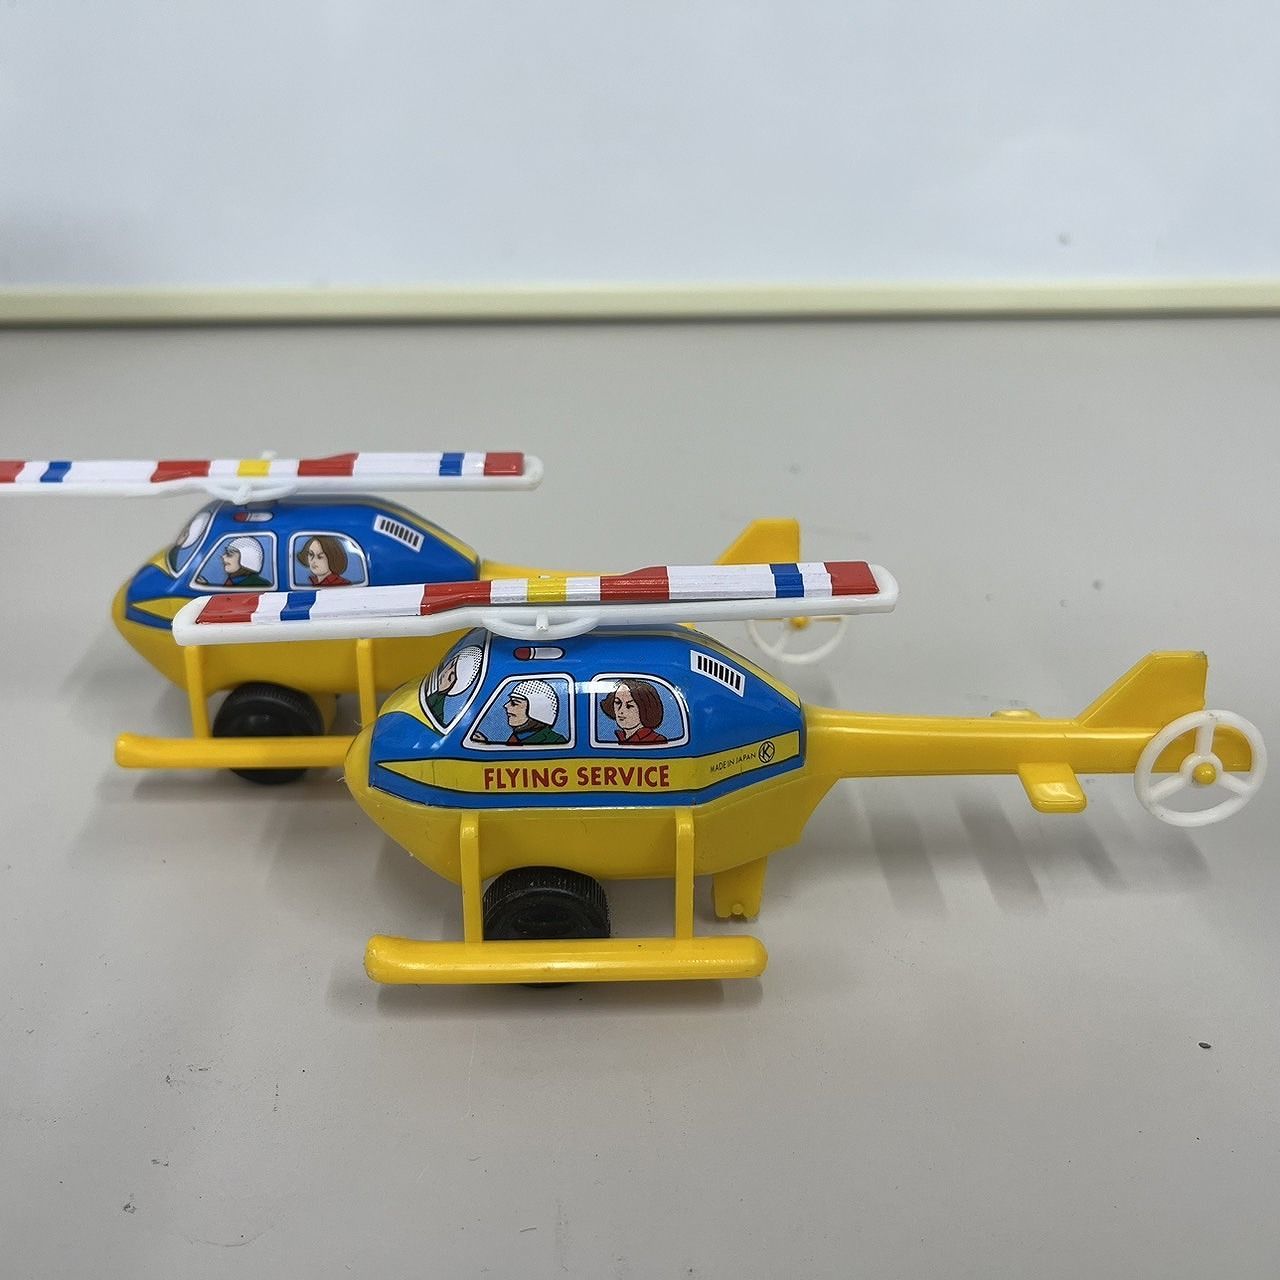 USED ブリキ ヘリコプター おもちゃ 2個セット - 株式会社おくしん堂 1